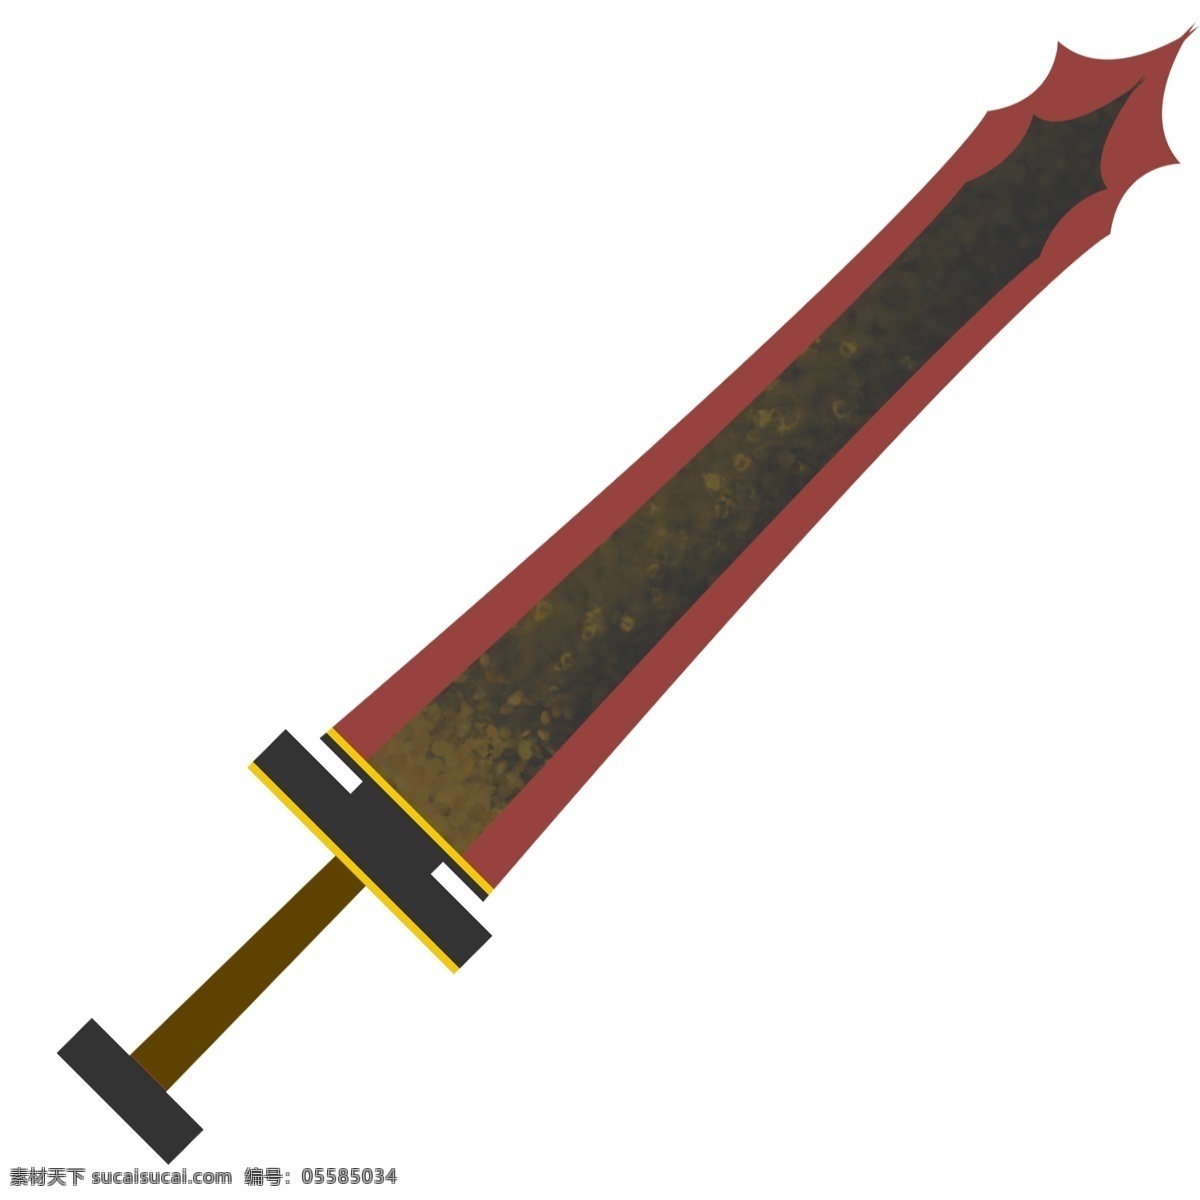 游戏装备 匕首 装备 游戏 卡通 复古 剑 刀剑匕首 游戏匕首装备 武器装备 战斗 武器